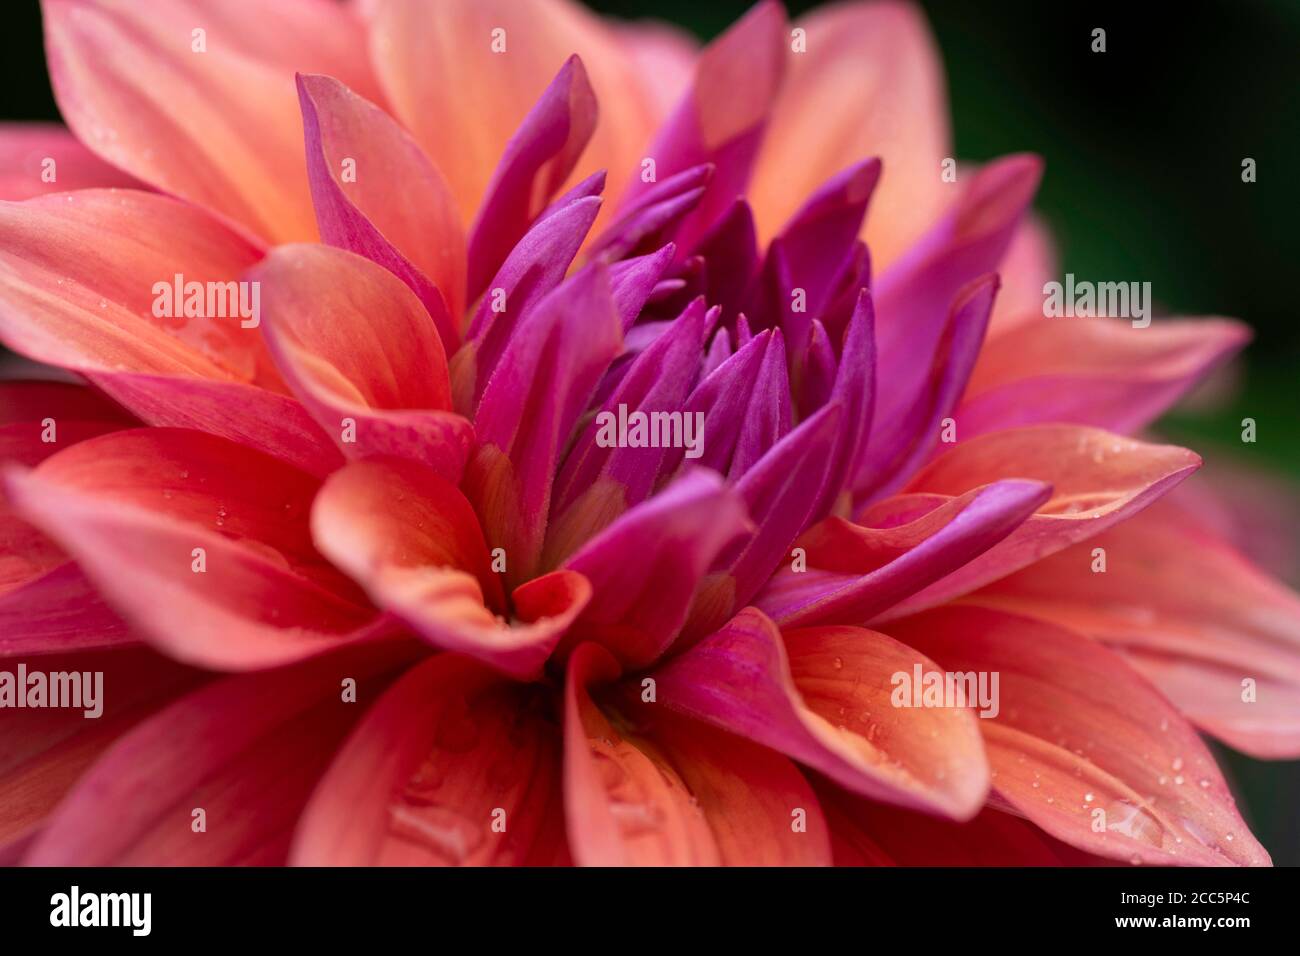 Un fiore Dahlia in piena fioritura con insolite sfumature di colore dall'arancione al rosa scuro Foto Stock